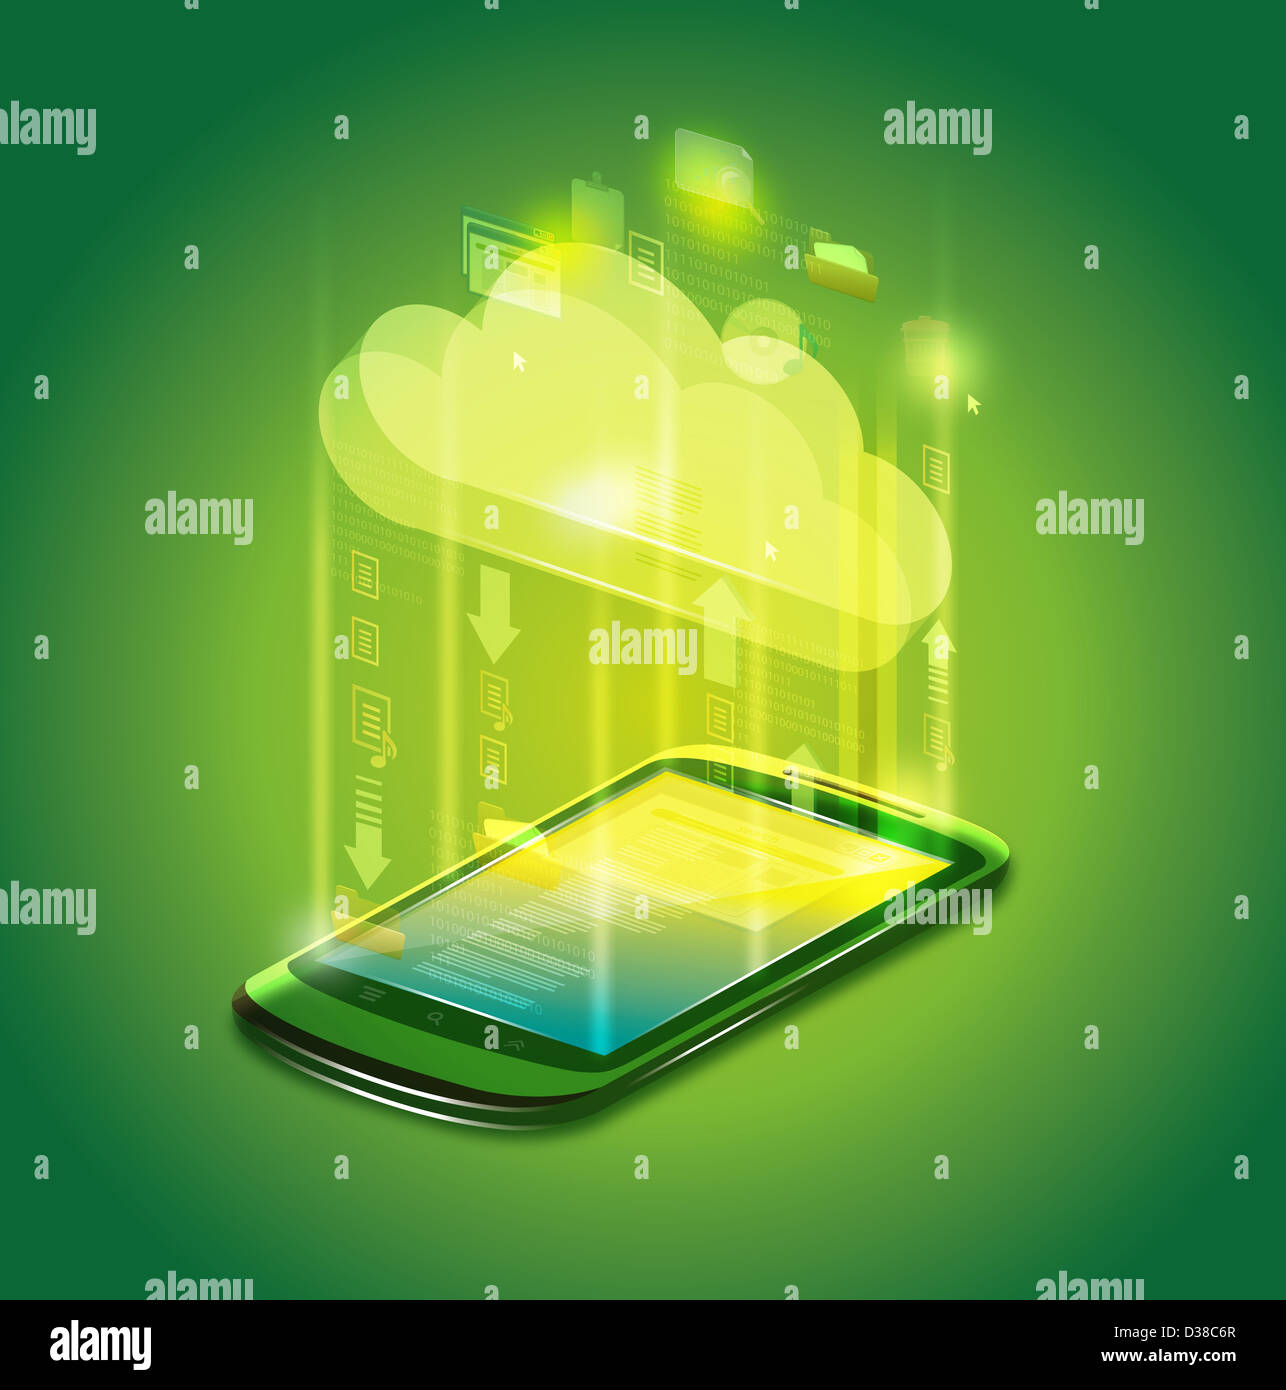 Image d'illustration de téléphone mobile représentant le cloud computing Banque D'Images